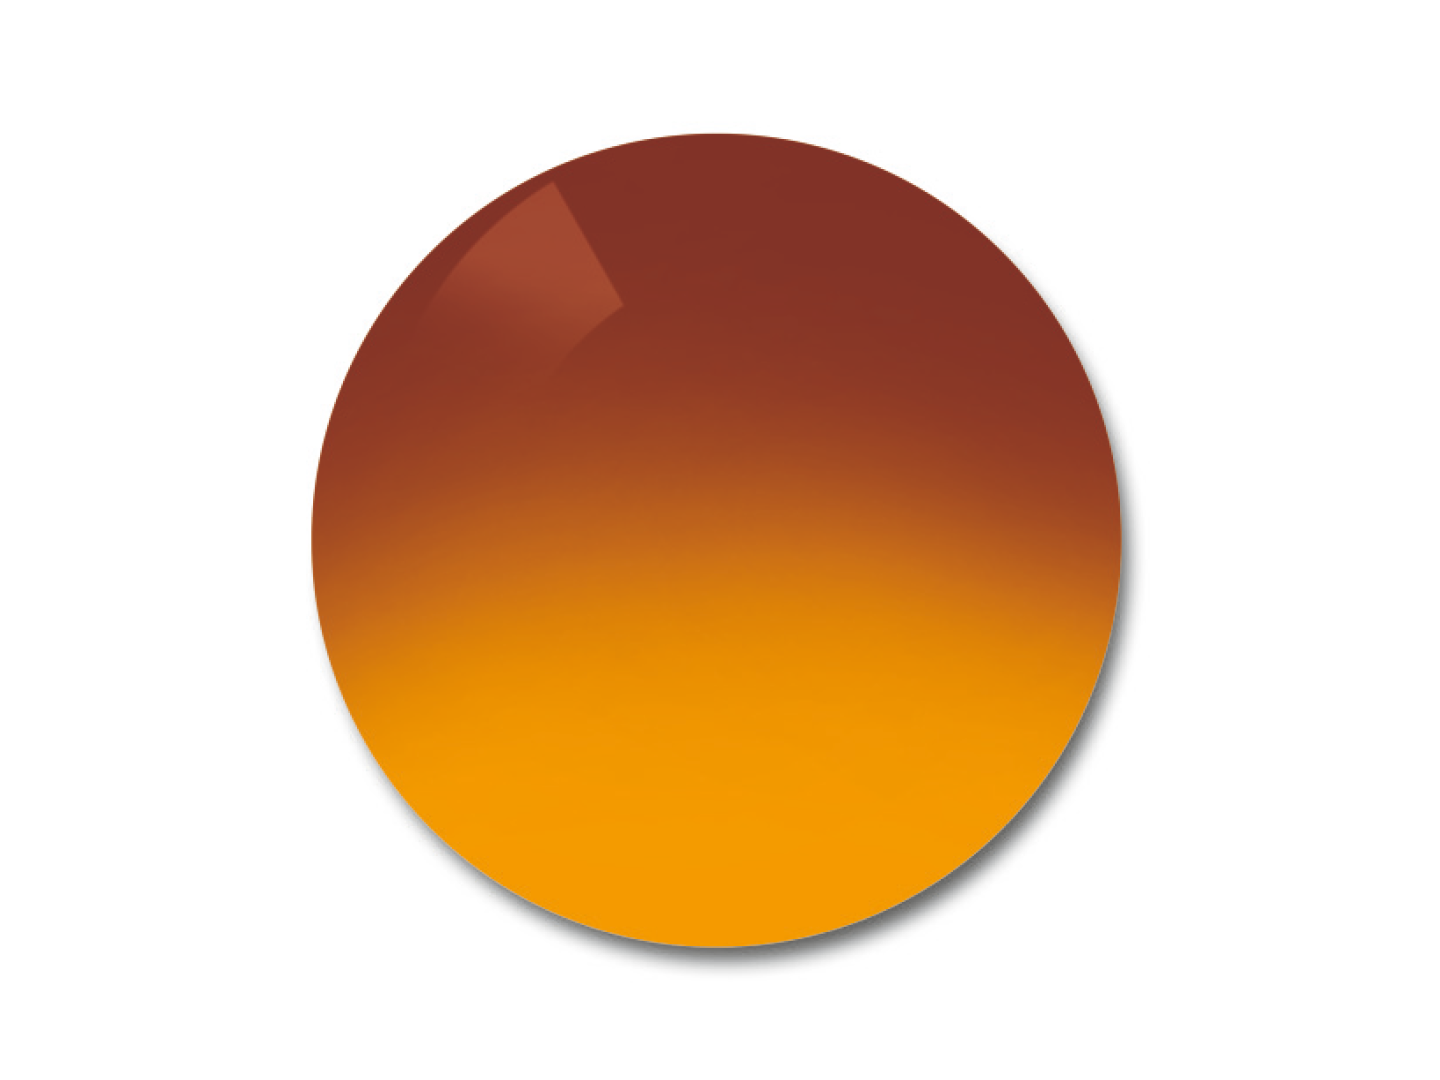 Färgexempel för ProGolf gradalfärg 75/25 % glasfärg. 